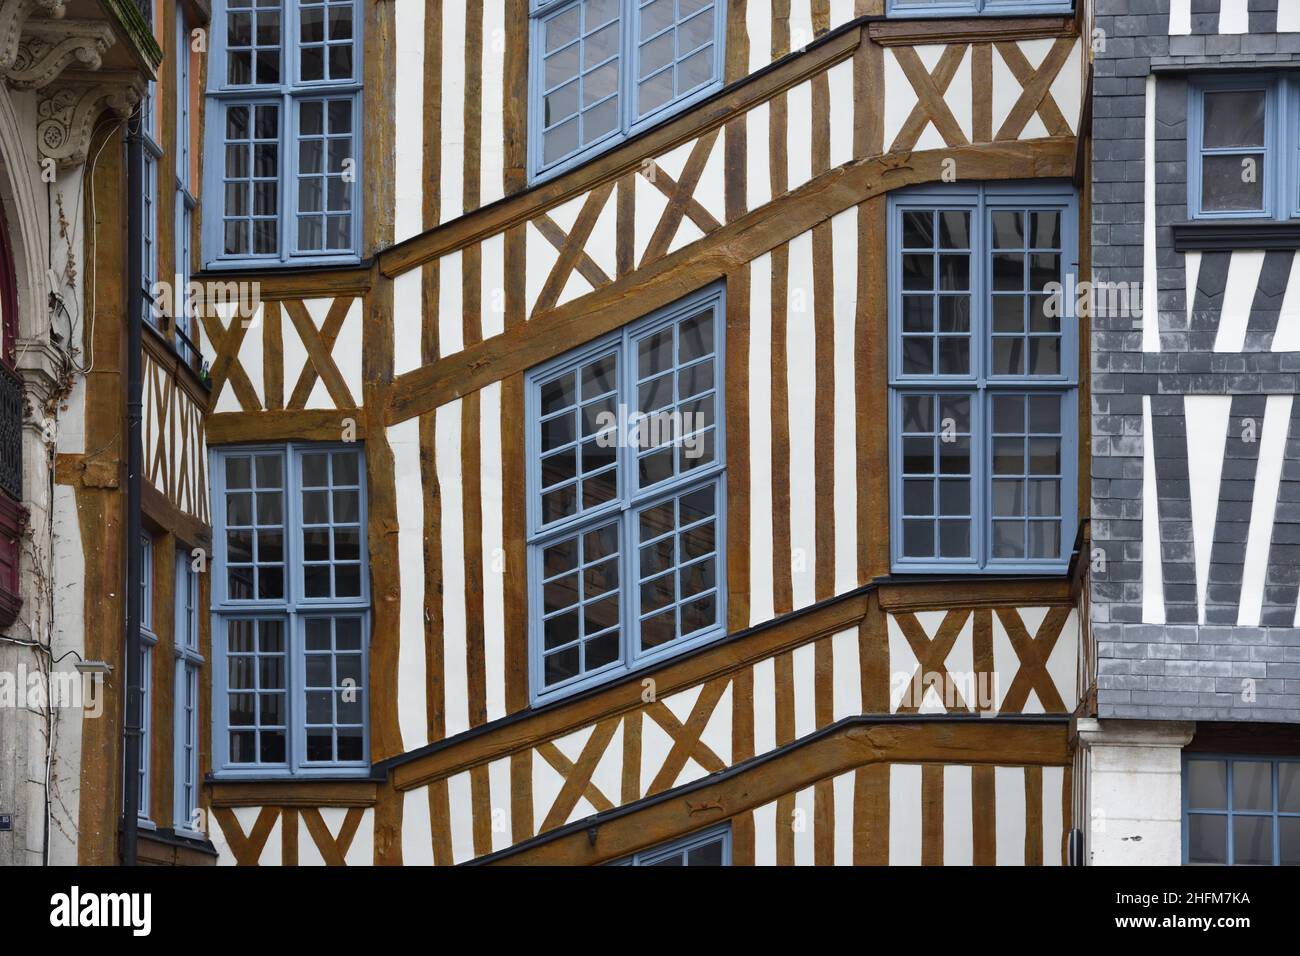 Motif de fenêtre de l'ancien cadre en bois façade de la maison C17th montrant la forme de l'escalier du bâtiment historique Rouen 4 place Barthelemy Normandie France Banque D'Images